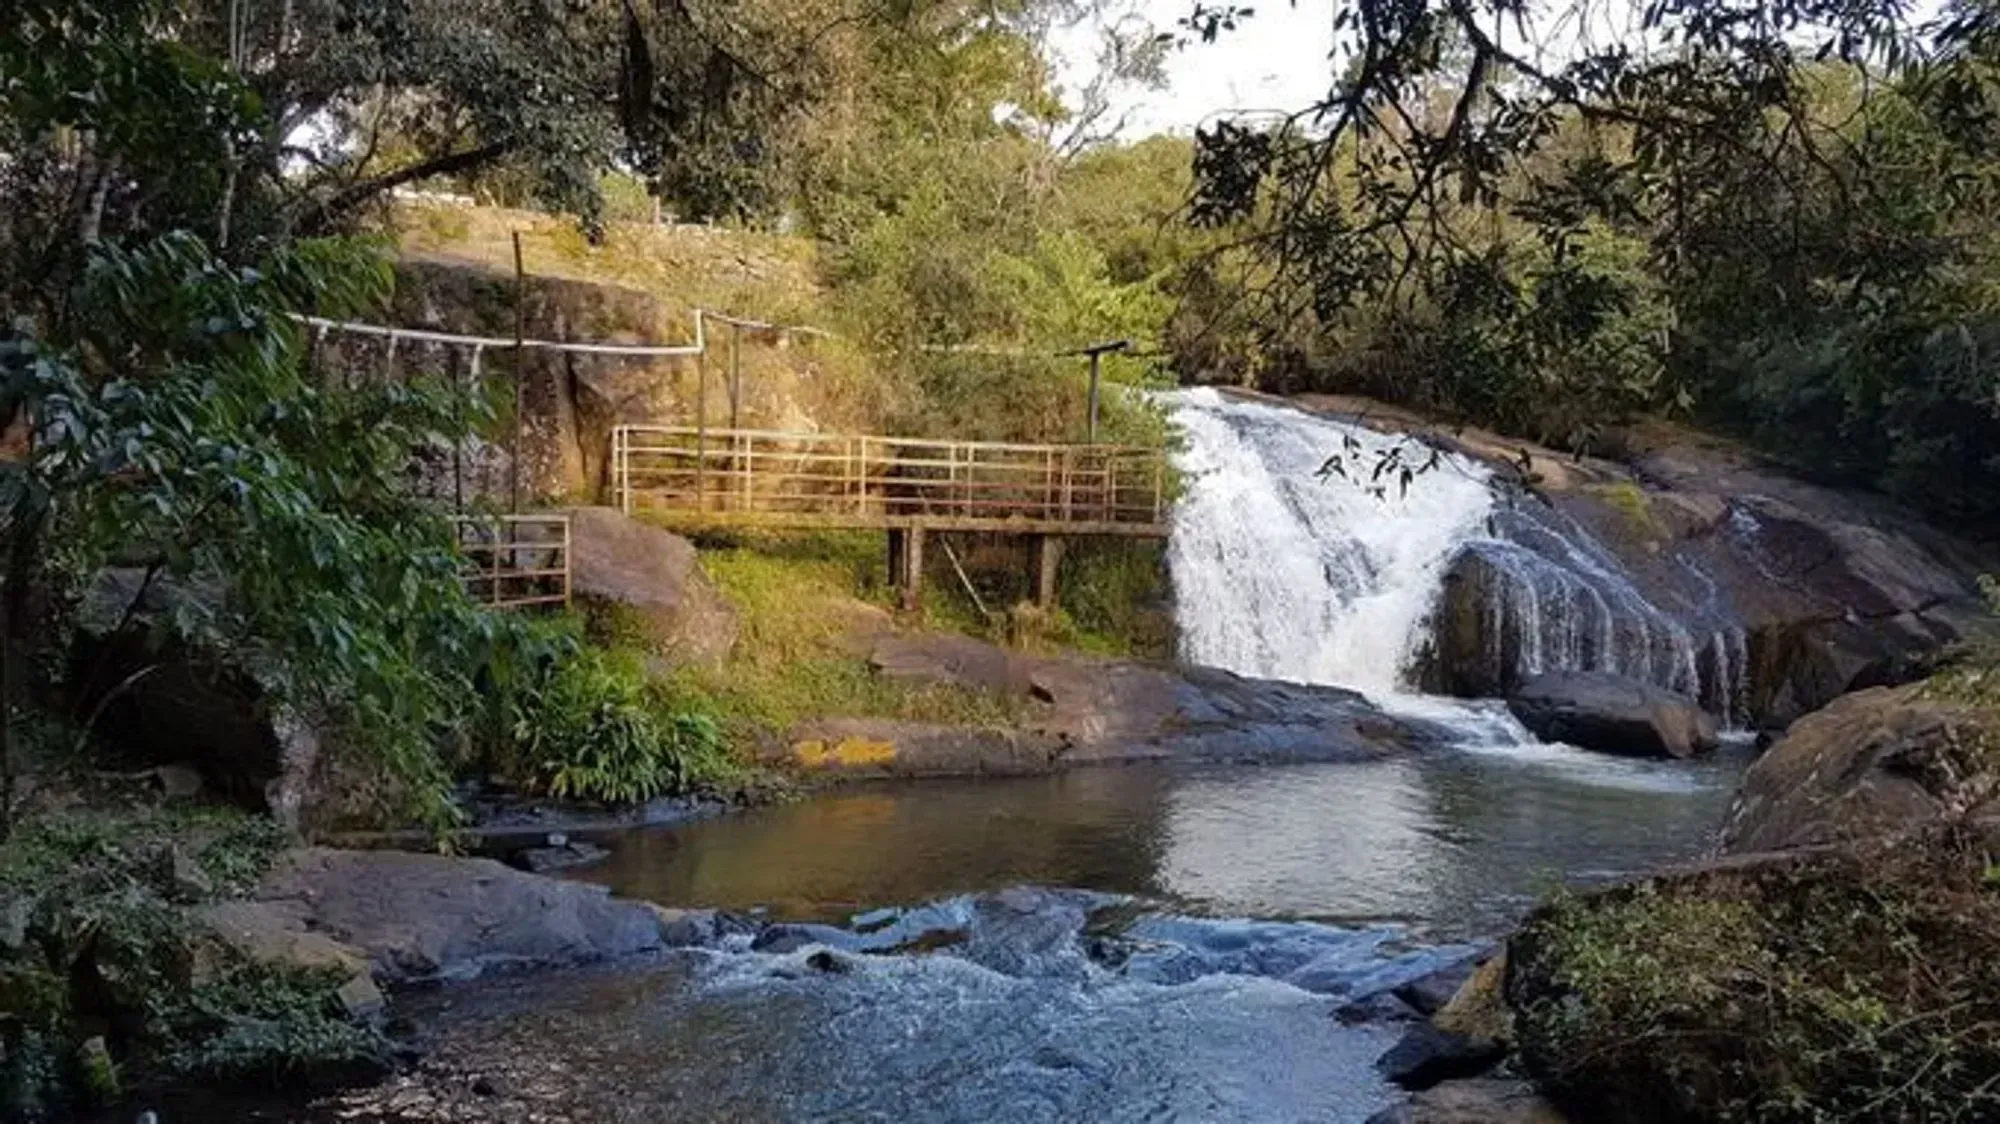 Principal queda d'água da Cascata Antônio Monteiro localizada no bairro Pocinhos do Rio Verde em Caldas - MG.